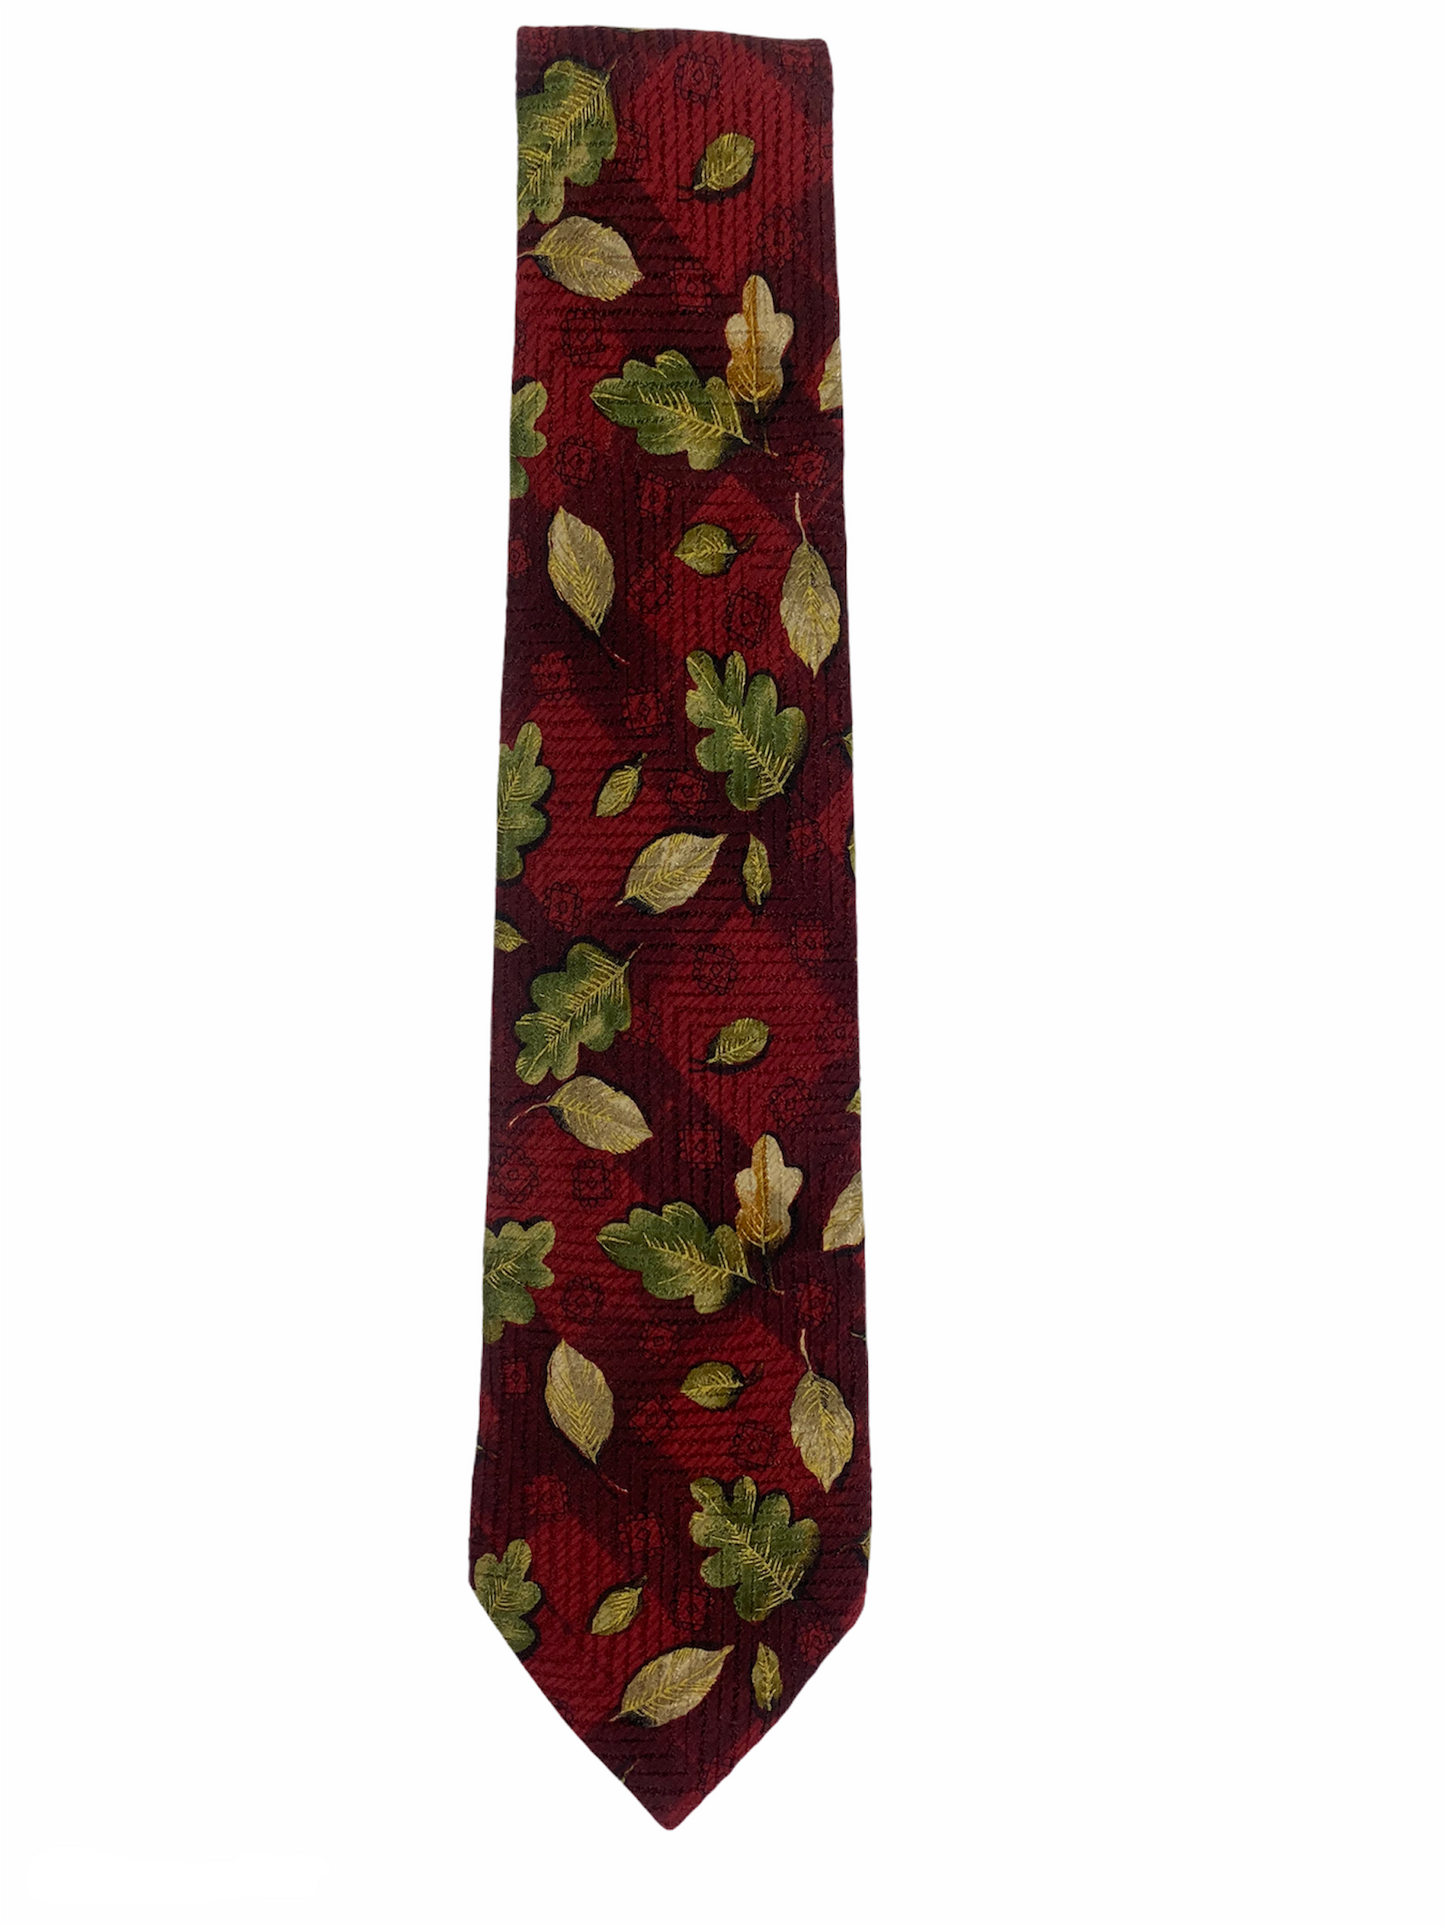 Cravate LORIS AZZARO fleuri, 100% soie de couleur dominante bordeaux/rouge.